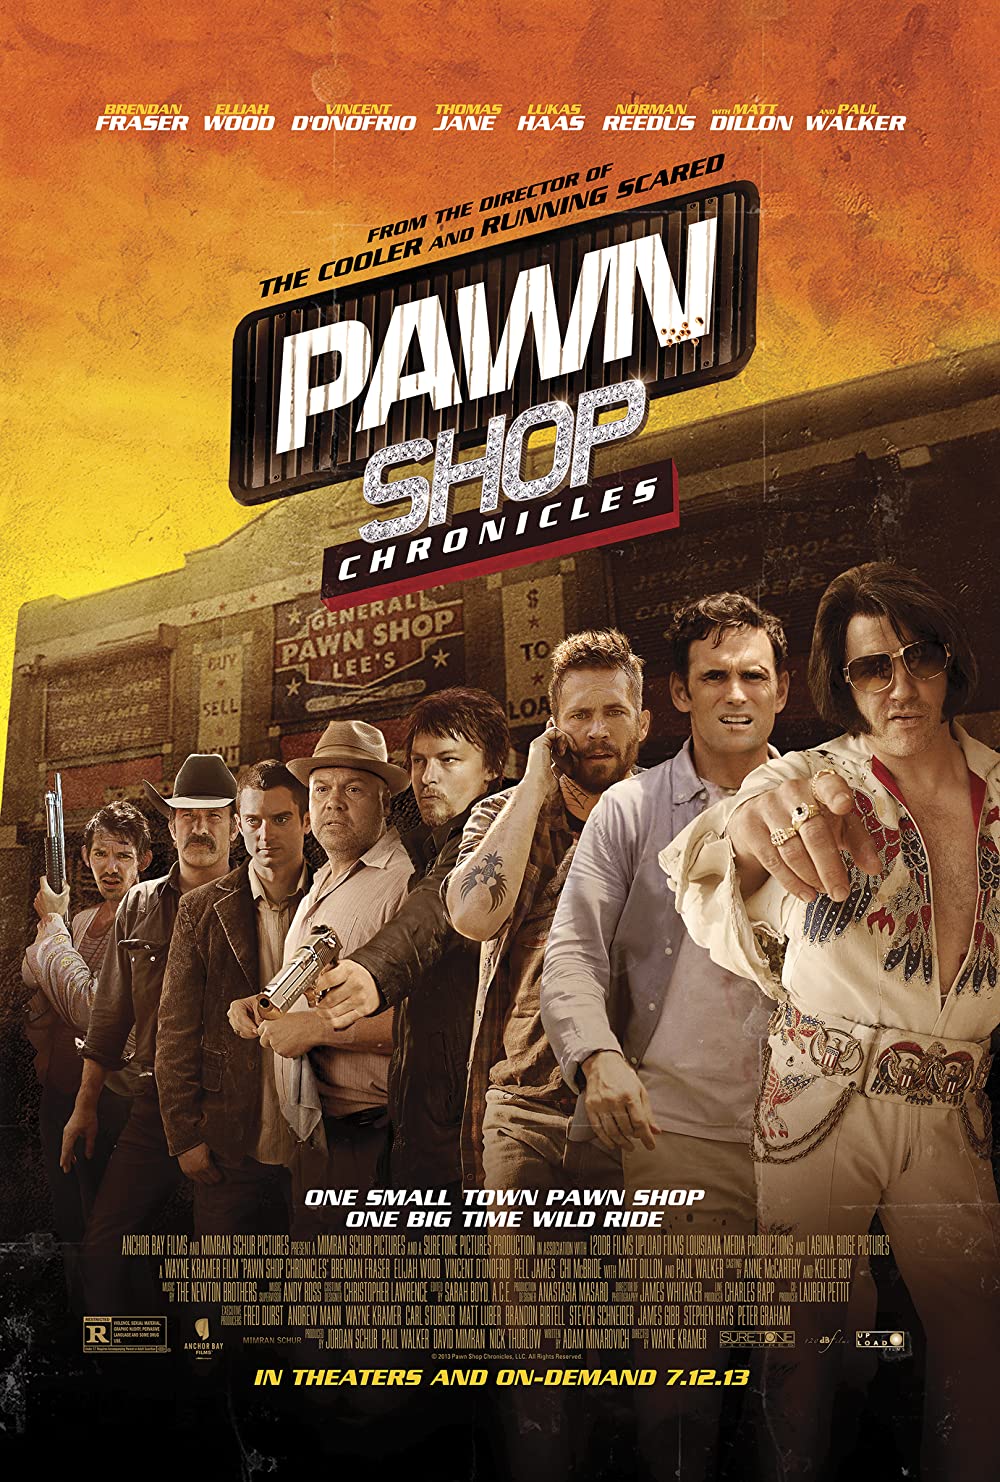 ดูหนังออนไลน์ฟรี Pawn Shop Chronicles (2013) มหกรรมปล้นเดือด เลือดแค้นกระฉูด หนังเต็มเรื่อง หนังมาสเตอร์ ดูหนังHD ดูหนังออนไลน์ ดูหนังใหม่